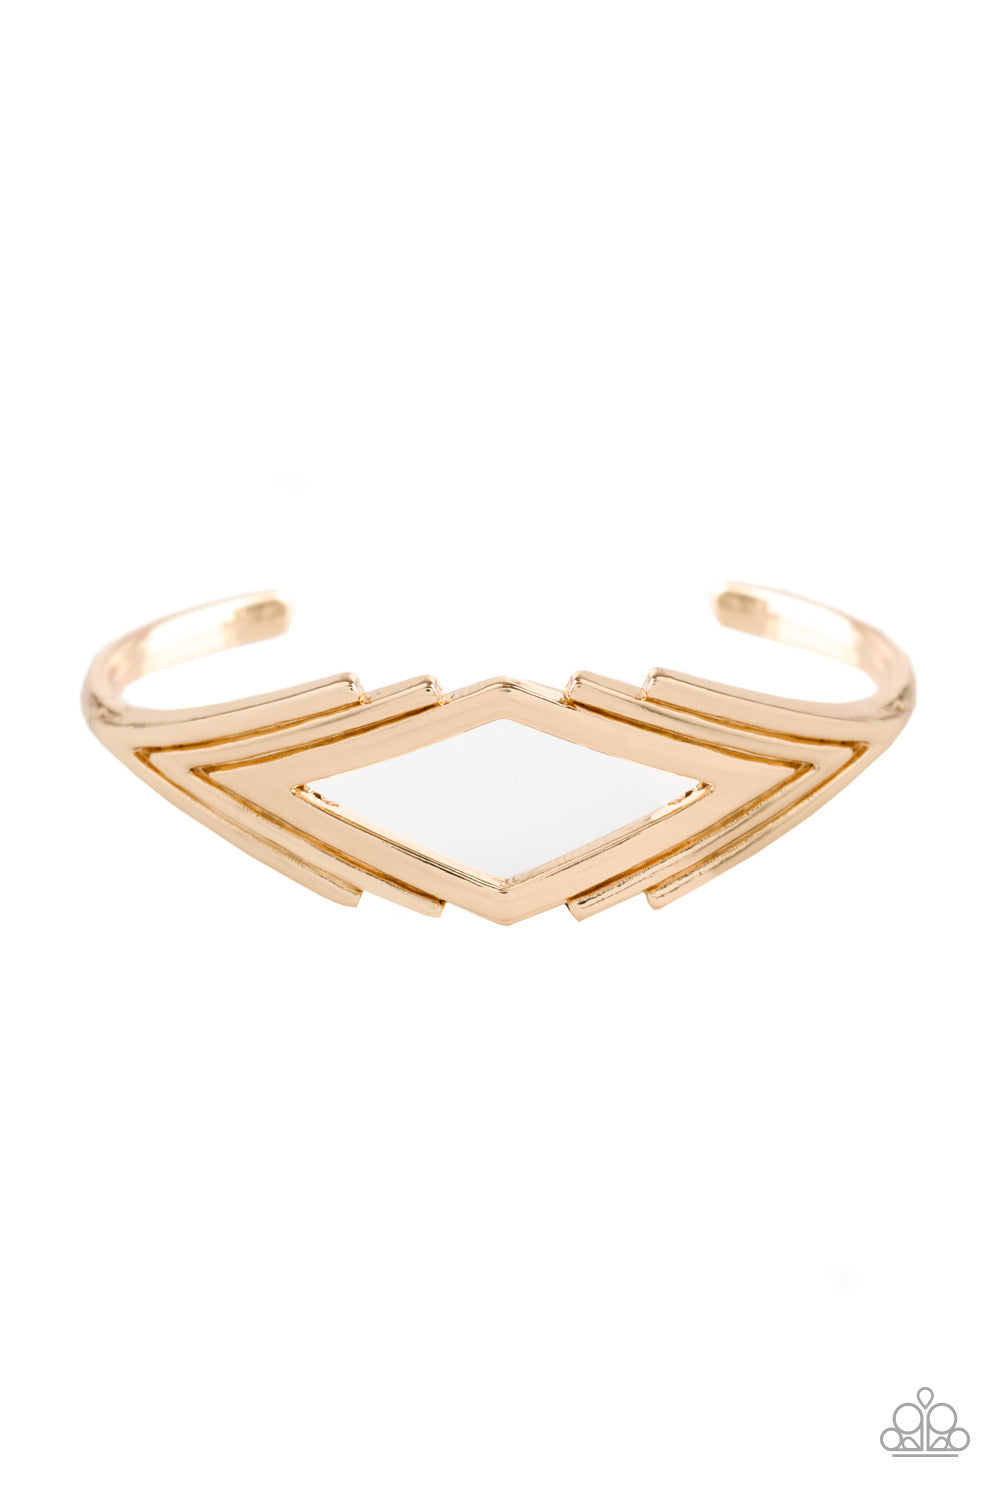 In Total De-NILE - Gold Cuff Bracelet- Paparazzi Accessories